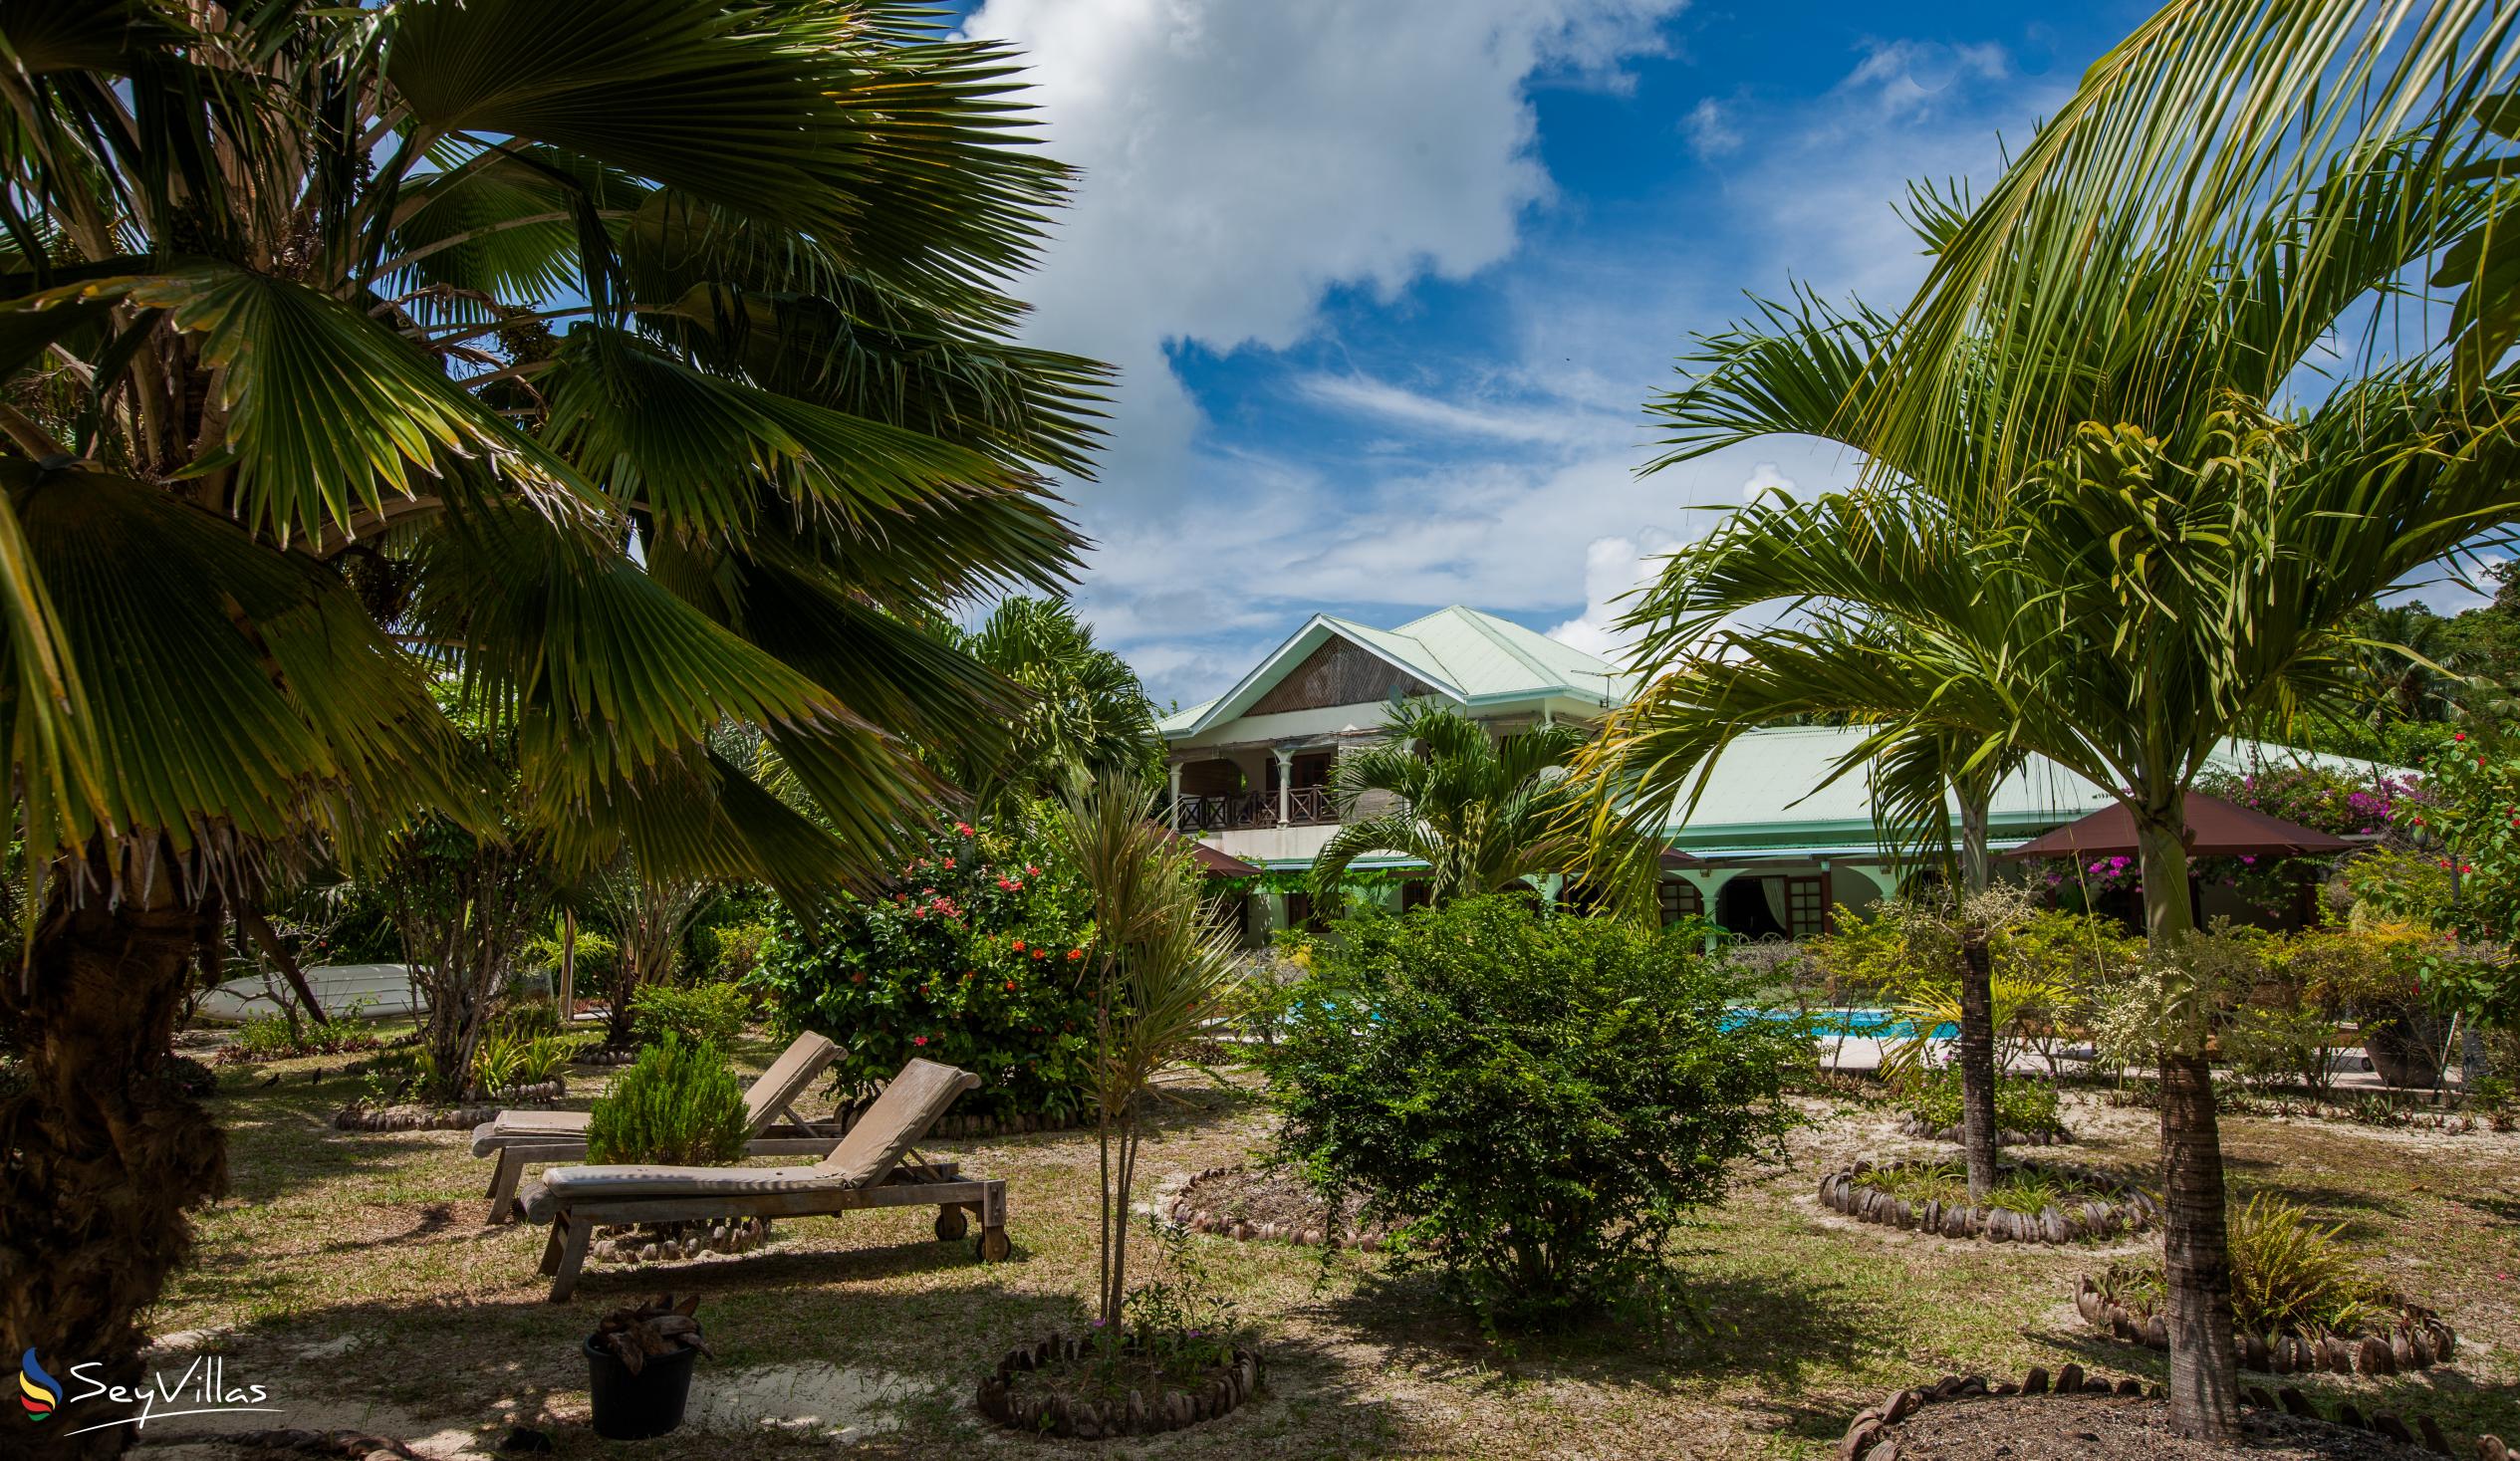 Foto 11: Villa de Cerf - Aussenbereich - Cerf Island (Seychellen)